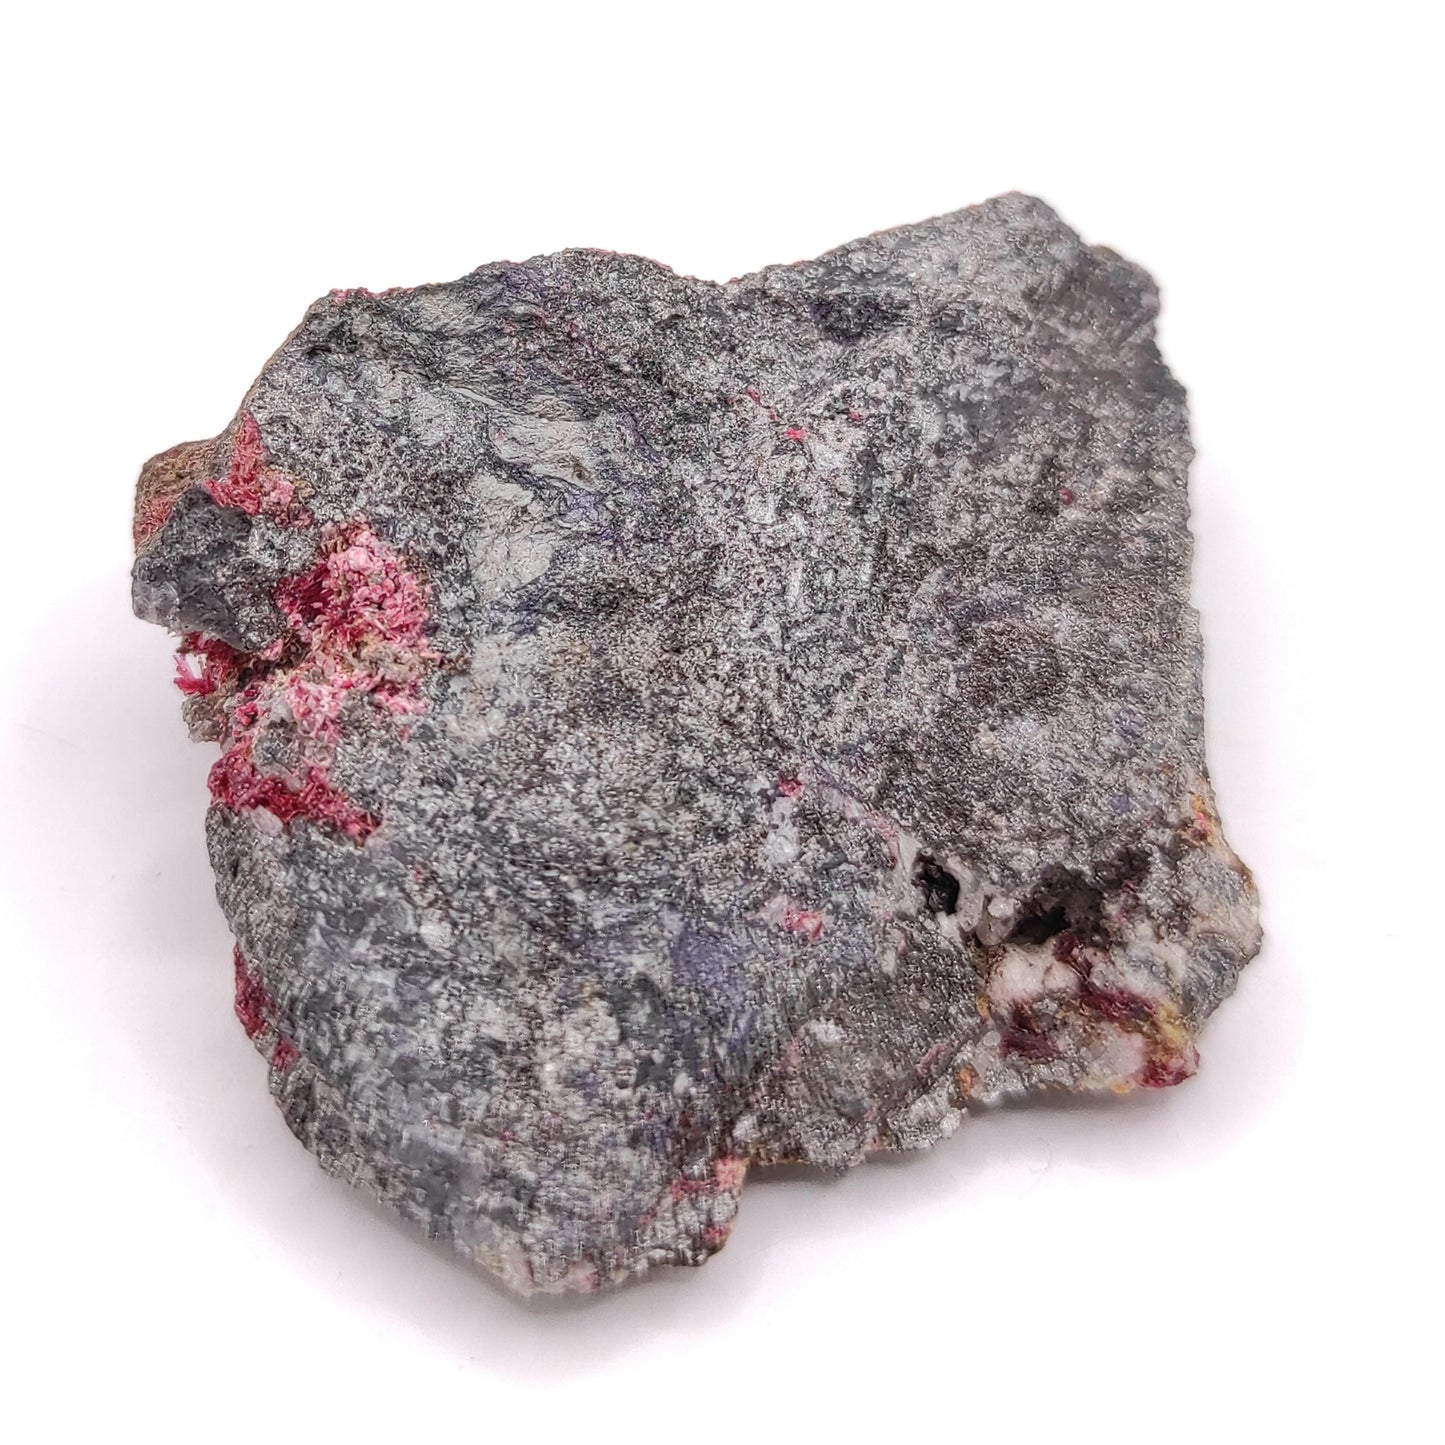 33g Erythrite - Cobalt Bloom